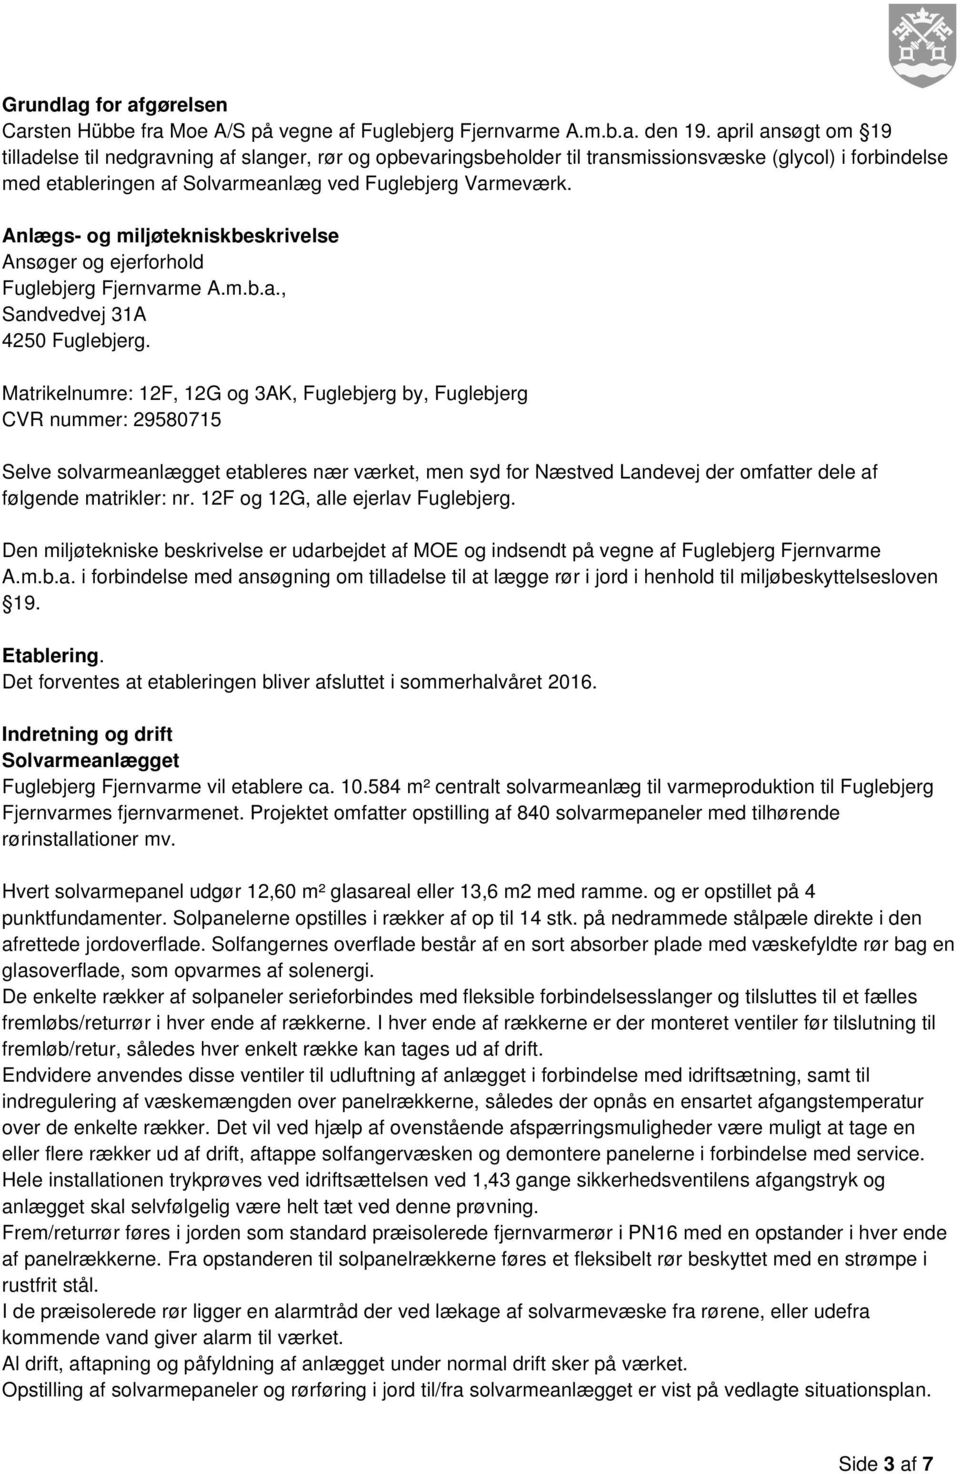 Anlægs- og miljøtekniskbeskrivelse Ansøger og ejerforhold Fuglebjerg Fjernvarme A.m.b.a., Sandvedvej 31A 4250 Fuglebjerg.